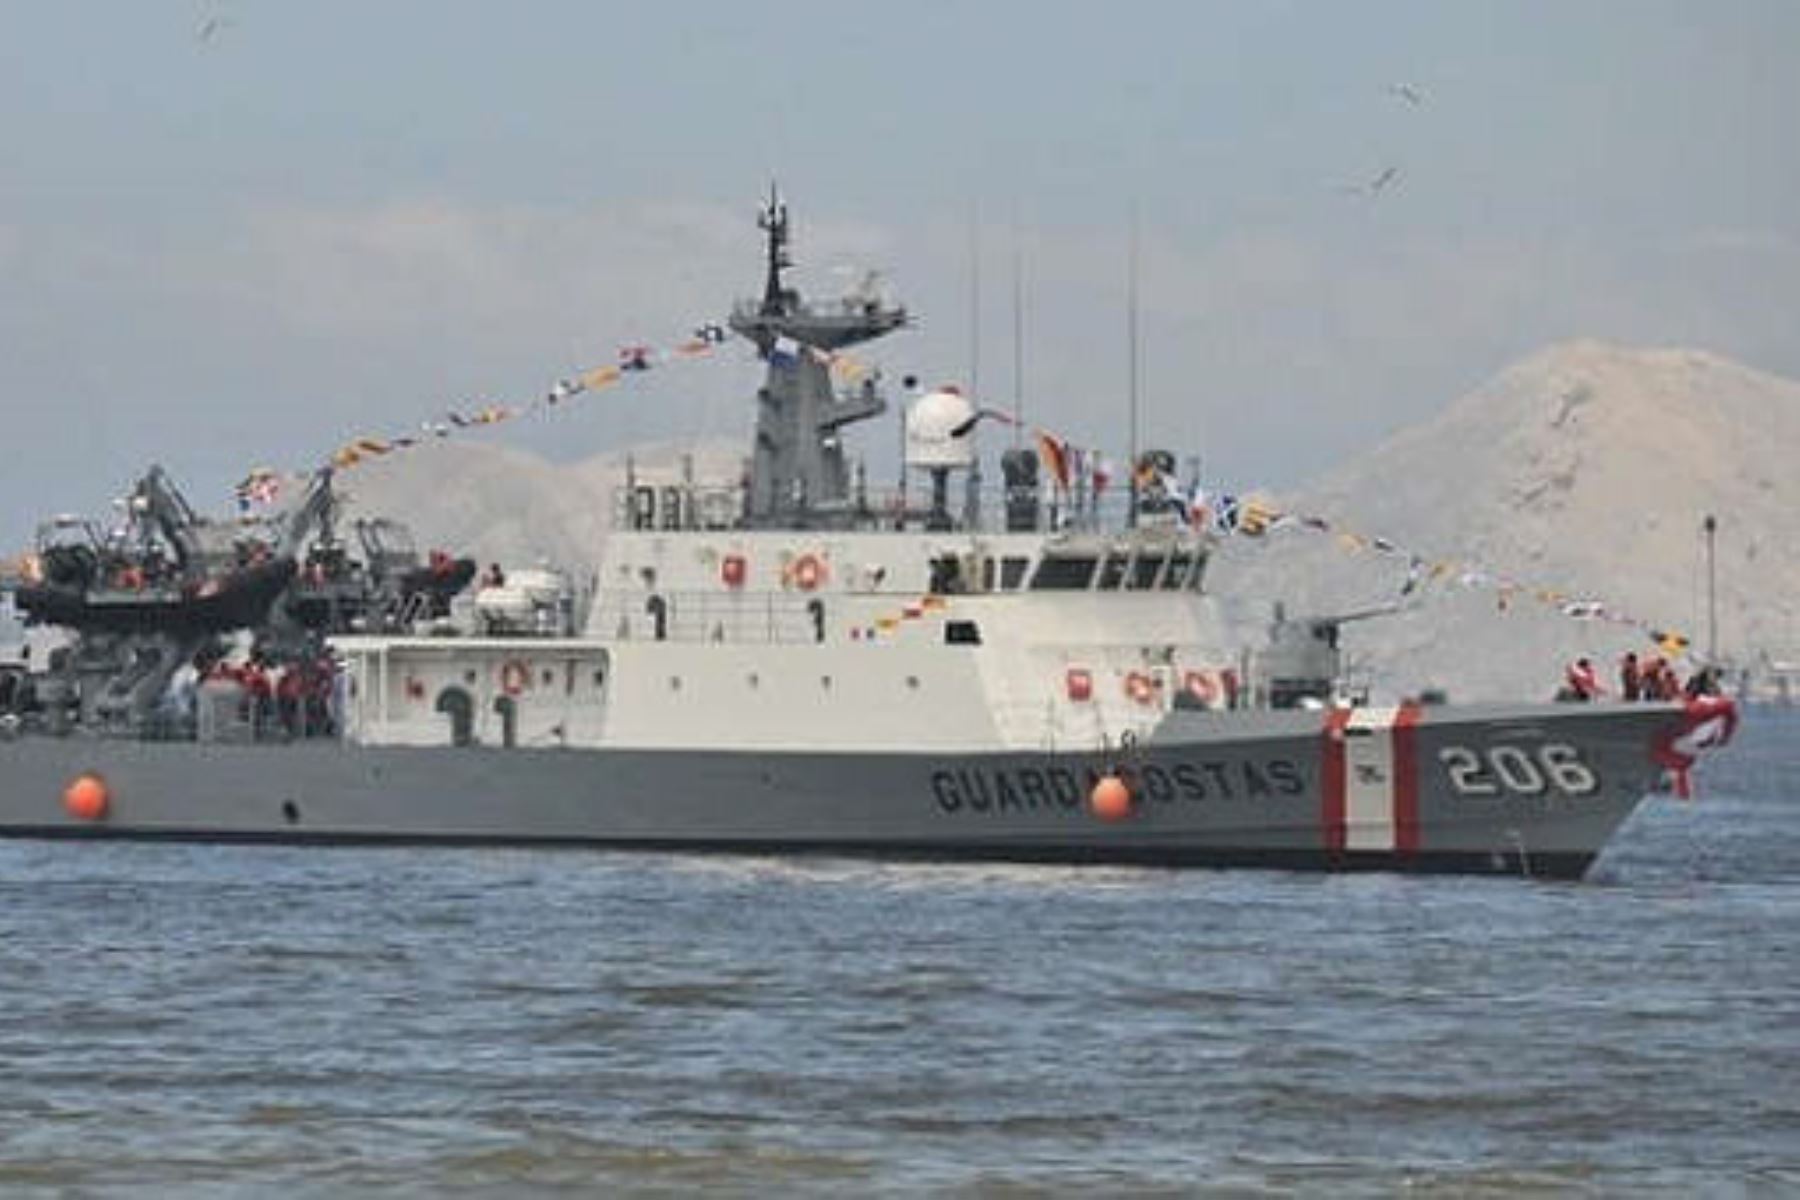 La Marina de Guerra del Perú desplegó interdicción con la patrullera marítima BAP Río Piura en el mar piurano de Talara. Foto: Marina de Guerra